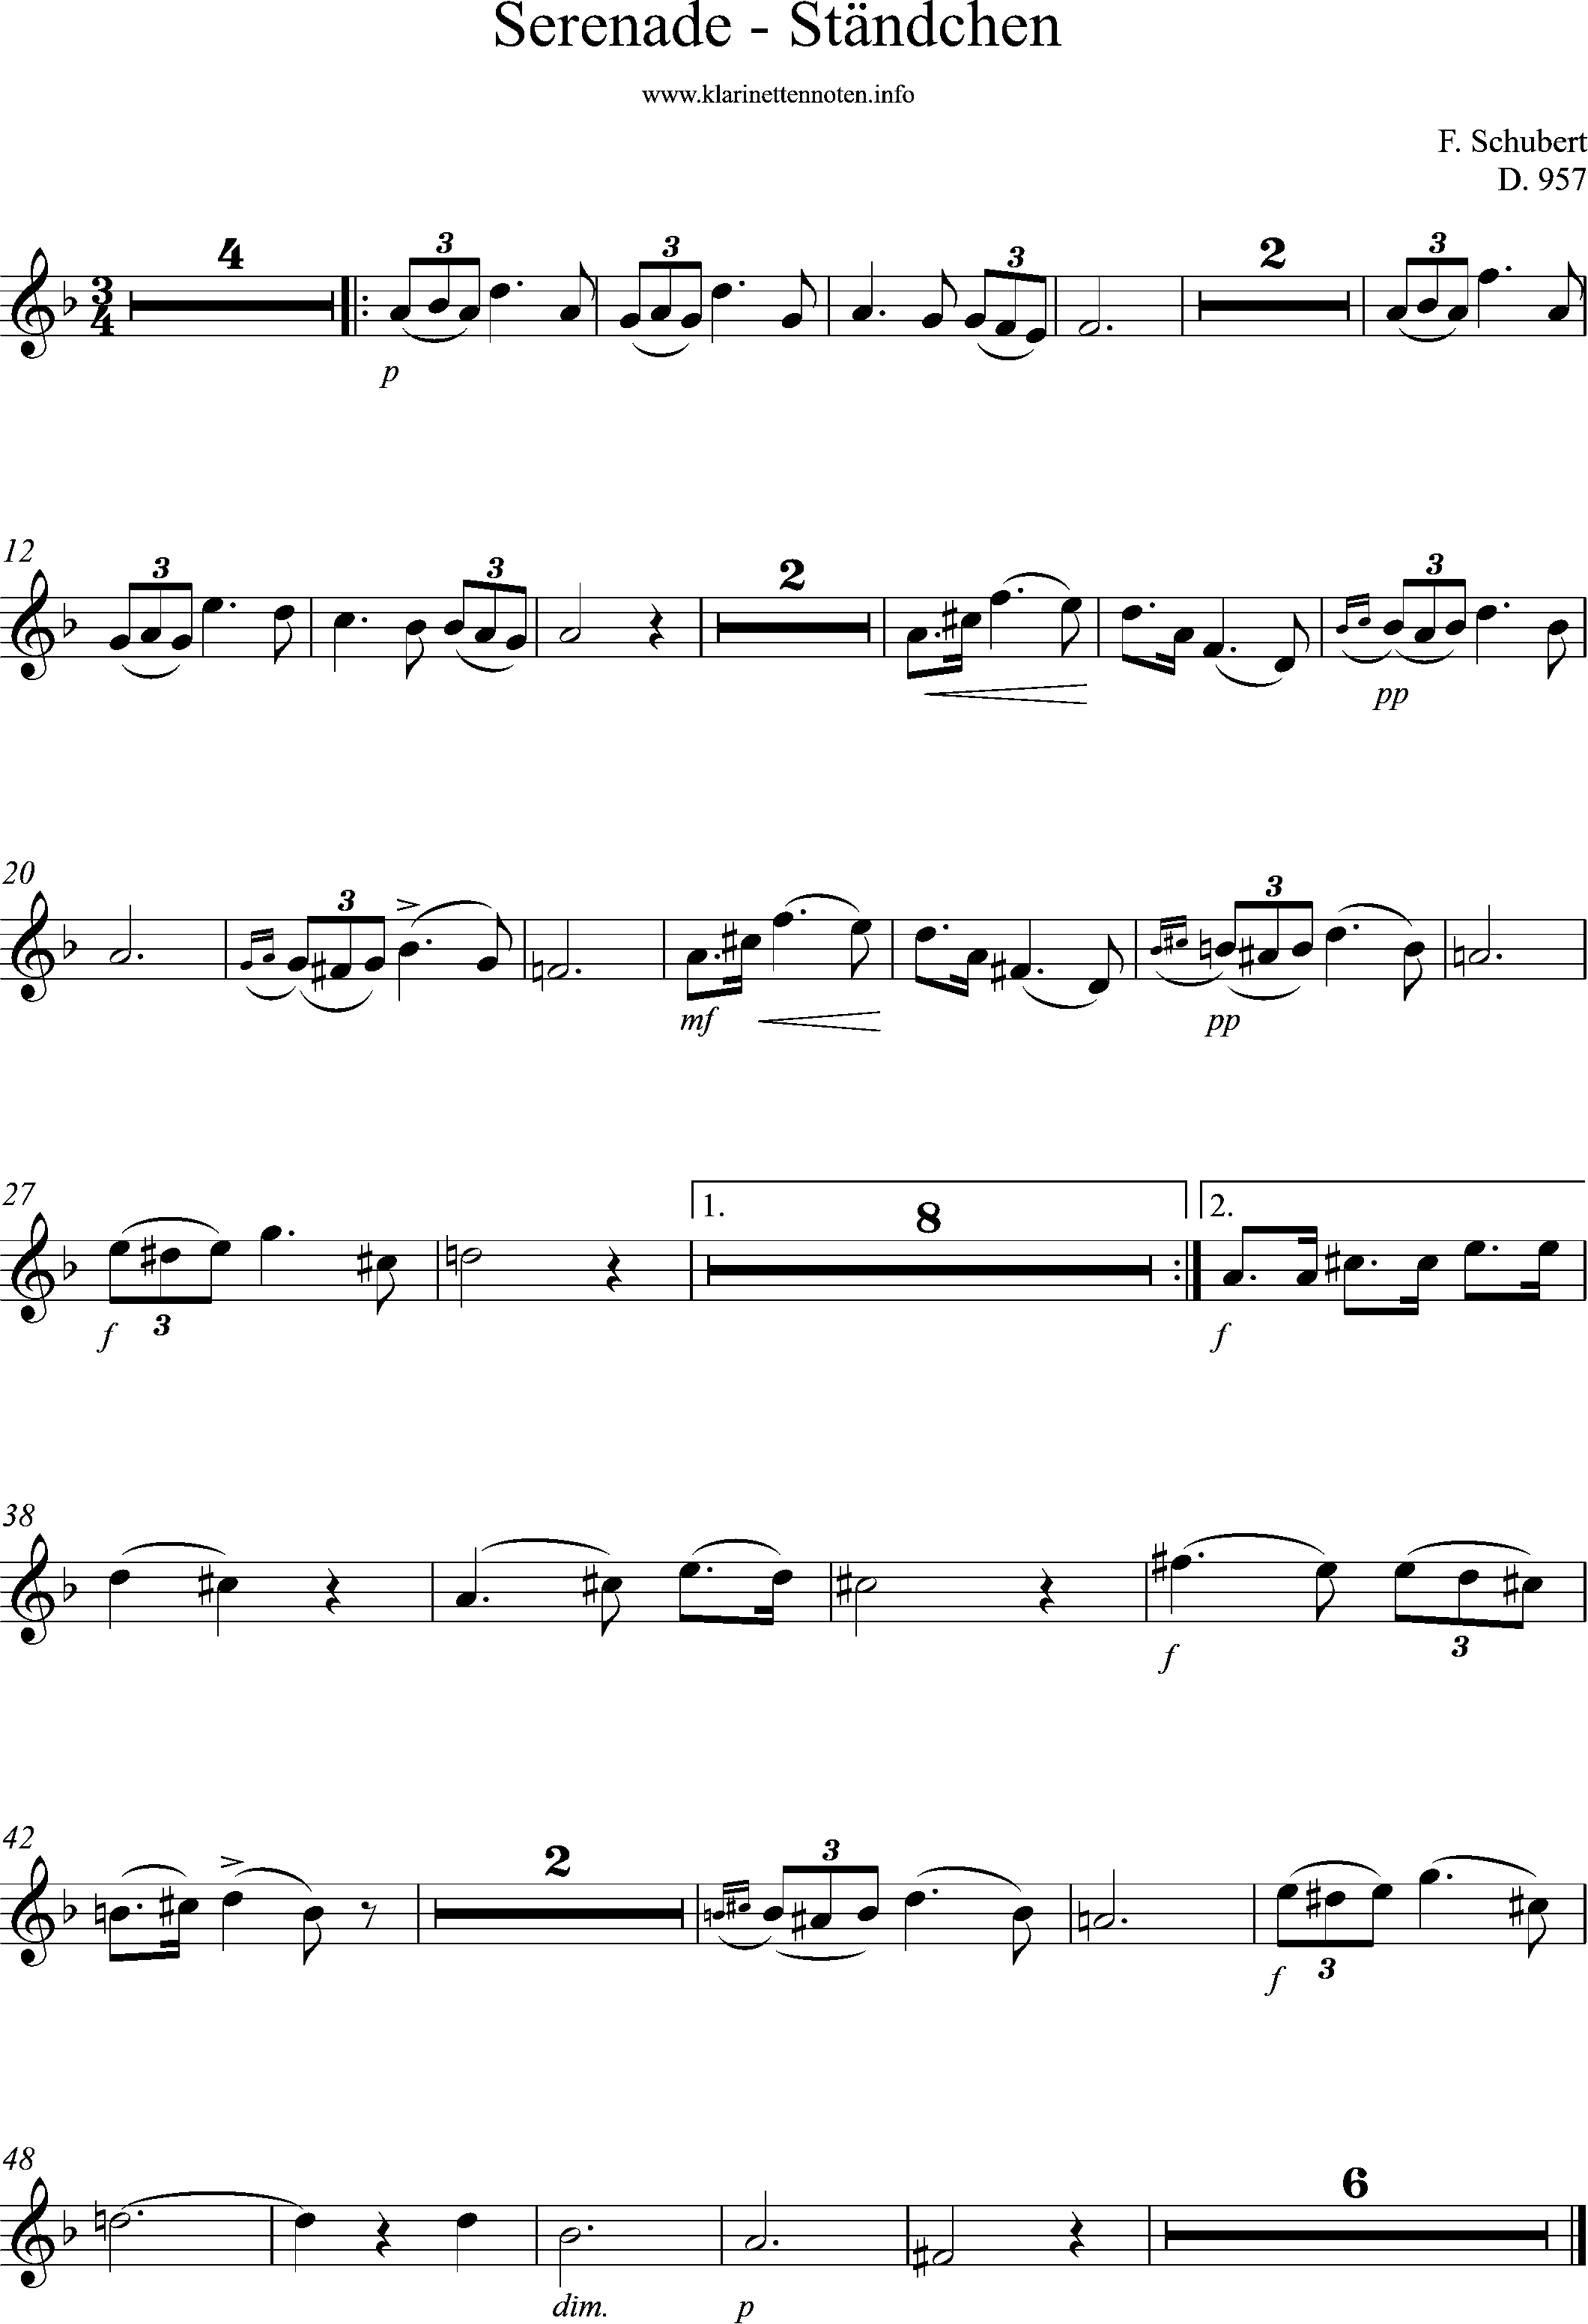 sheetmusic for Flute, D 957, Schwanengesang